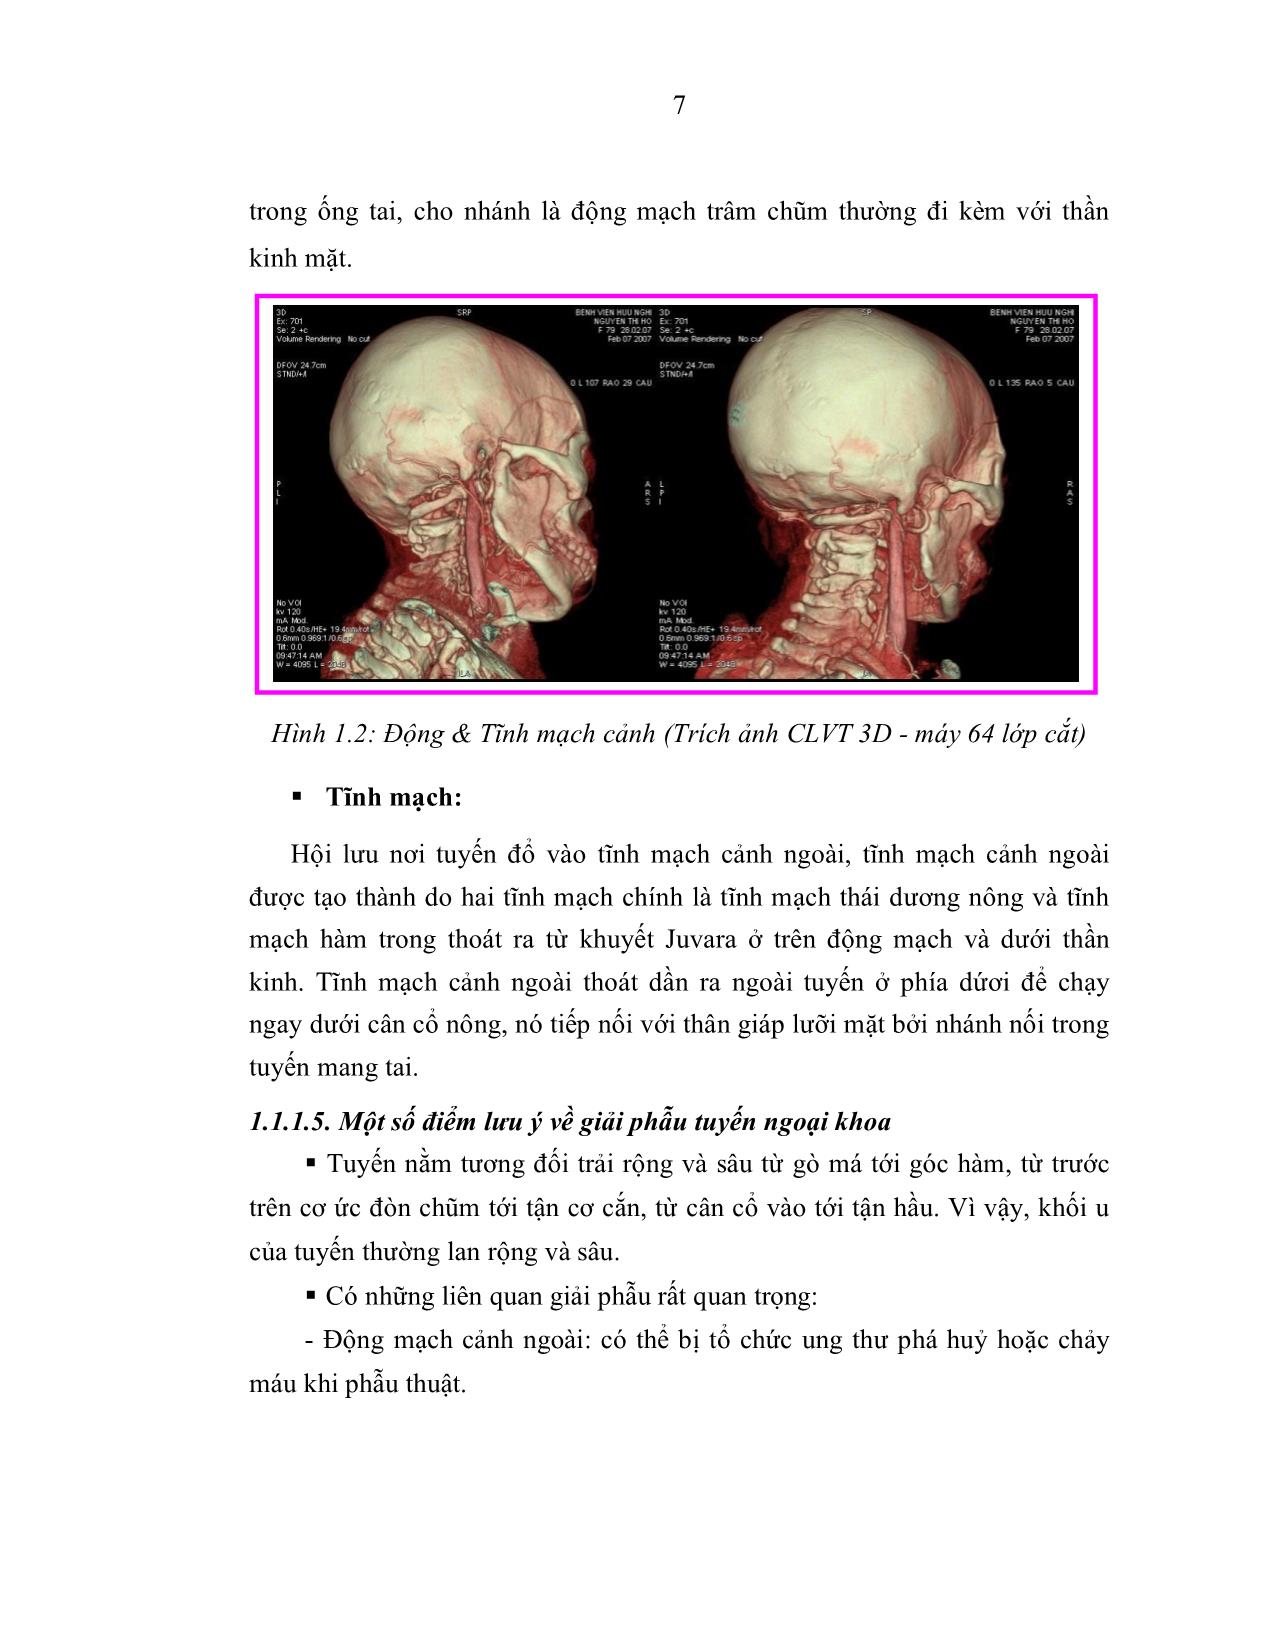 Nghiên cứu chẩn đoán và điều trị phẫu thuật u tuyến nước bọt mang tai trang 7